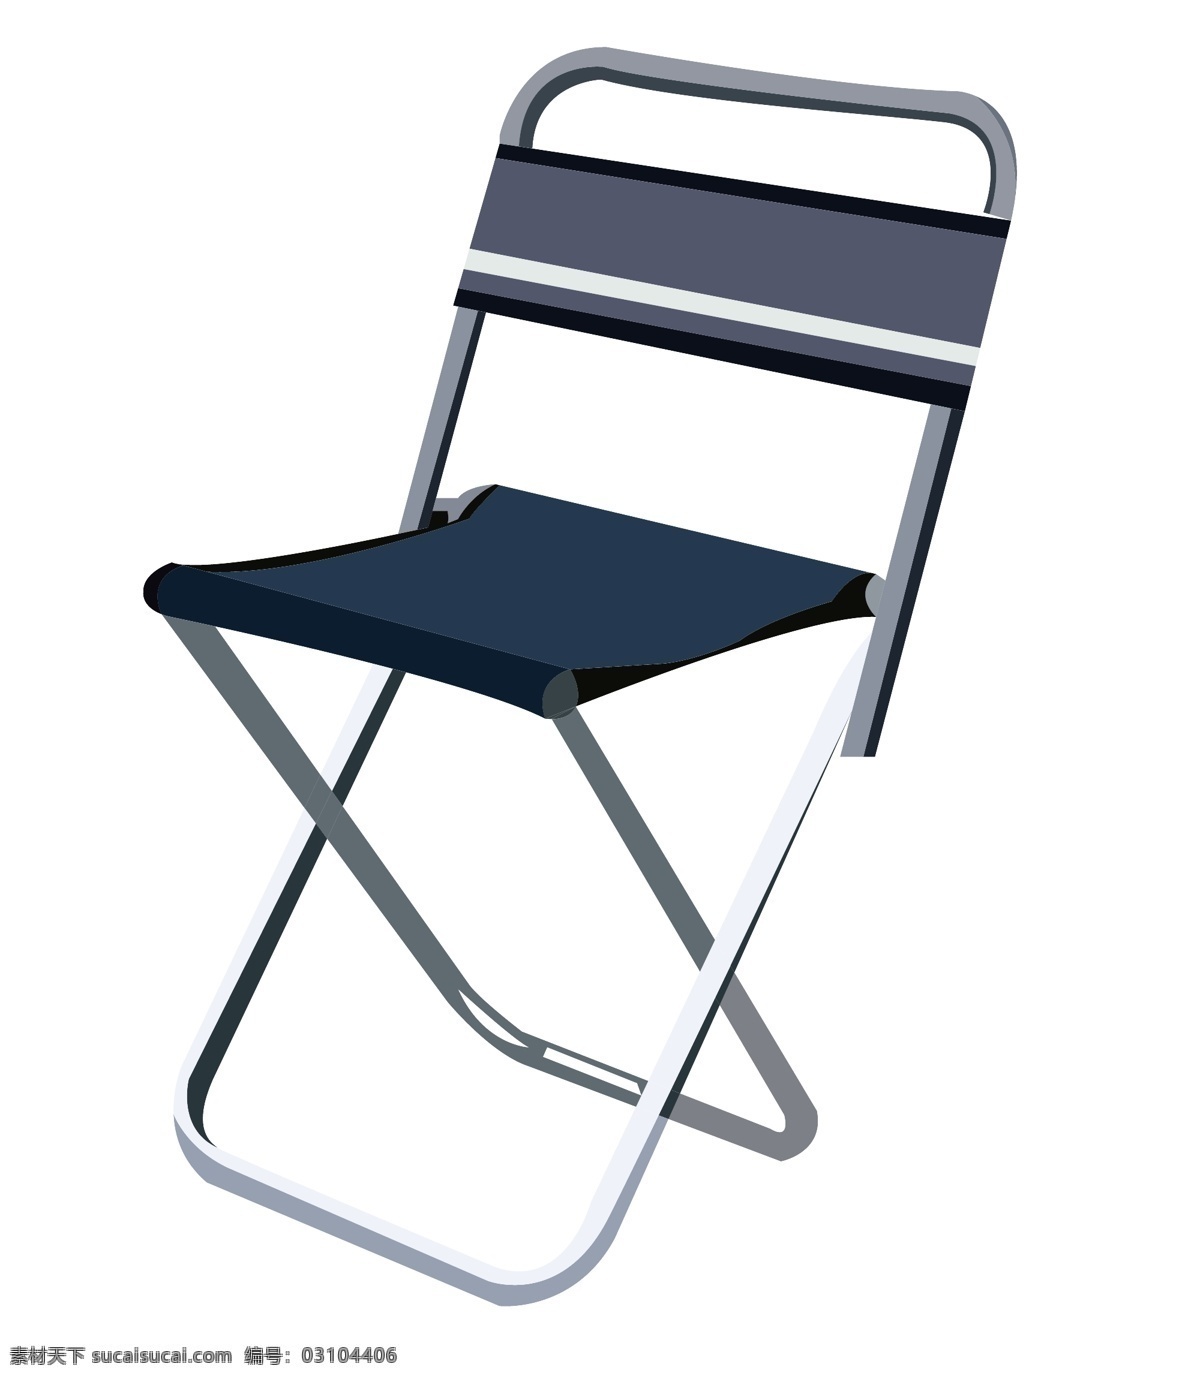 蓝色 椅子 装饰 插画 蓝色的椅子 漂亮的椅子 创意椅子 立体椅子 卡通椅子 椅子装饰 椅子插画